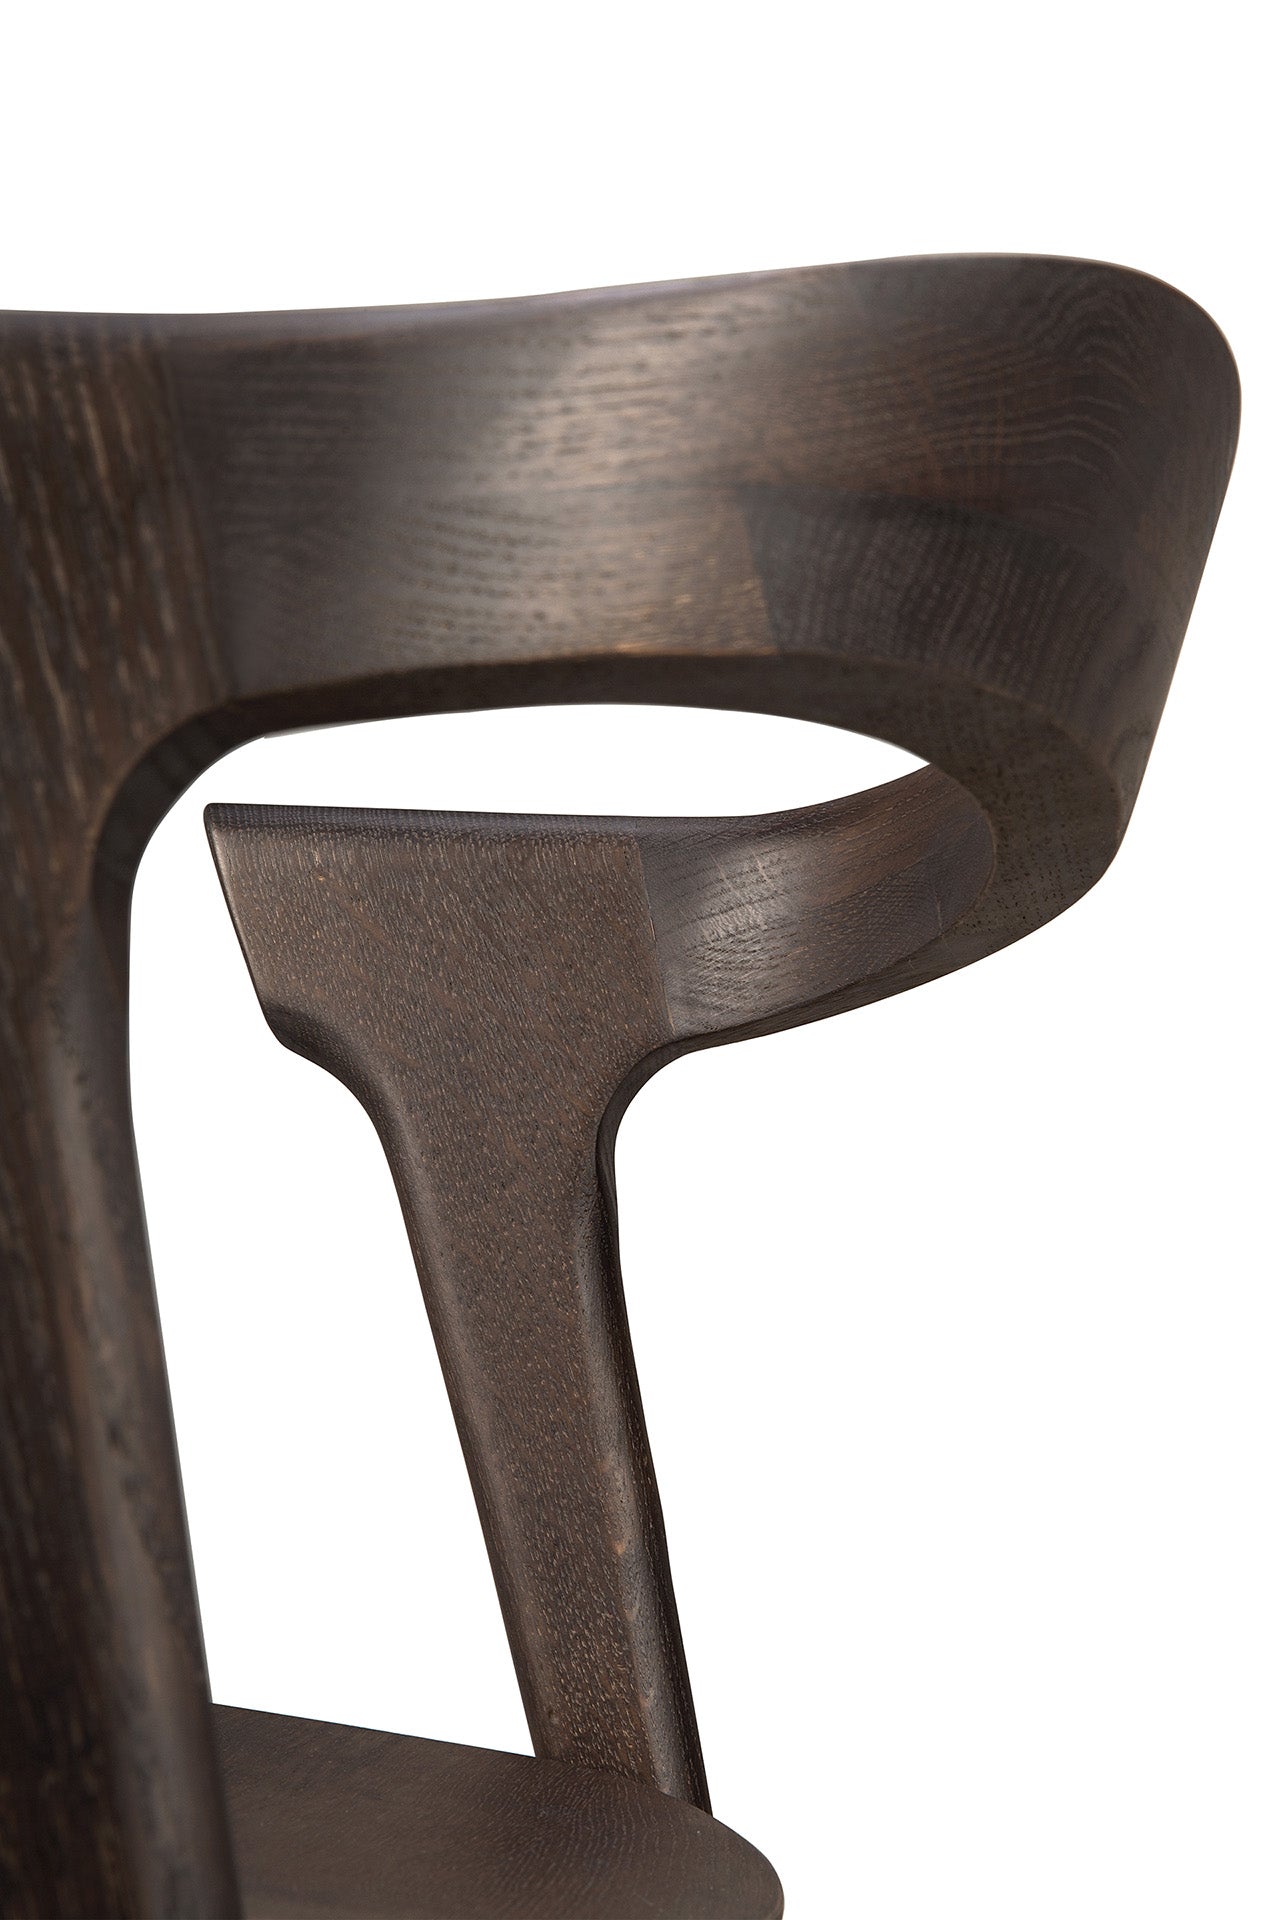 Load image into Gallery viewer, Bok Dining Chair by Alain Van Havre | Oak Brown
